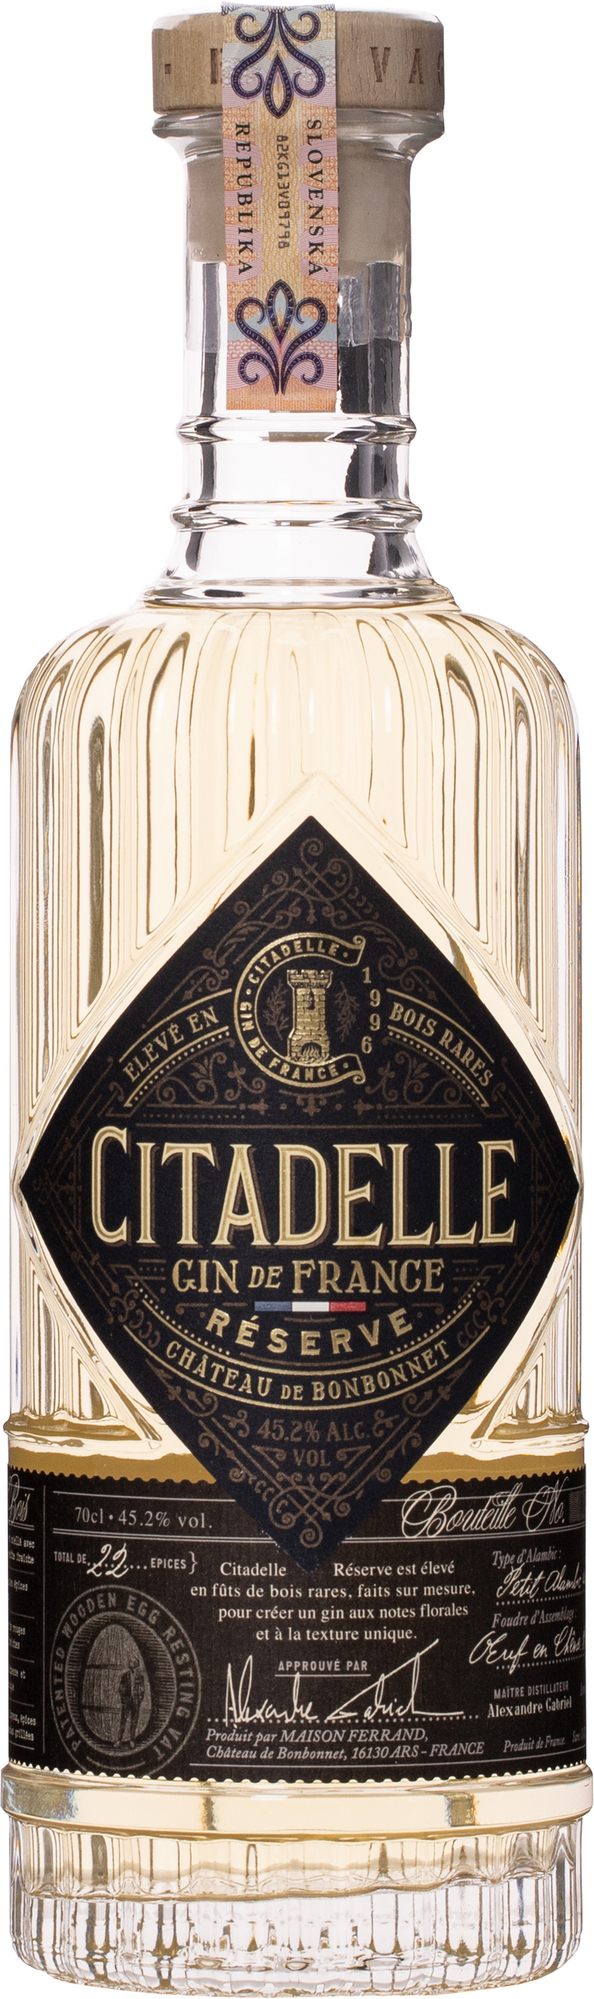 Citadelle Gin Réserve 45,2% 0,7l (čistá fľaša)